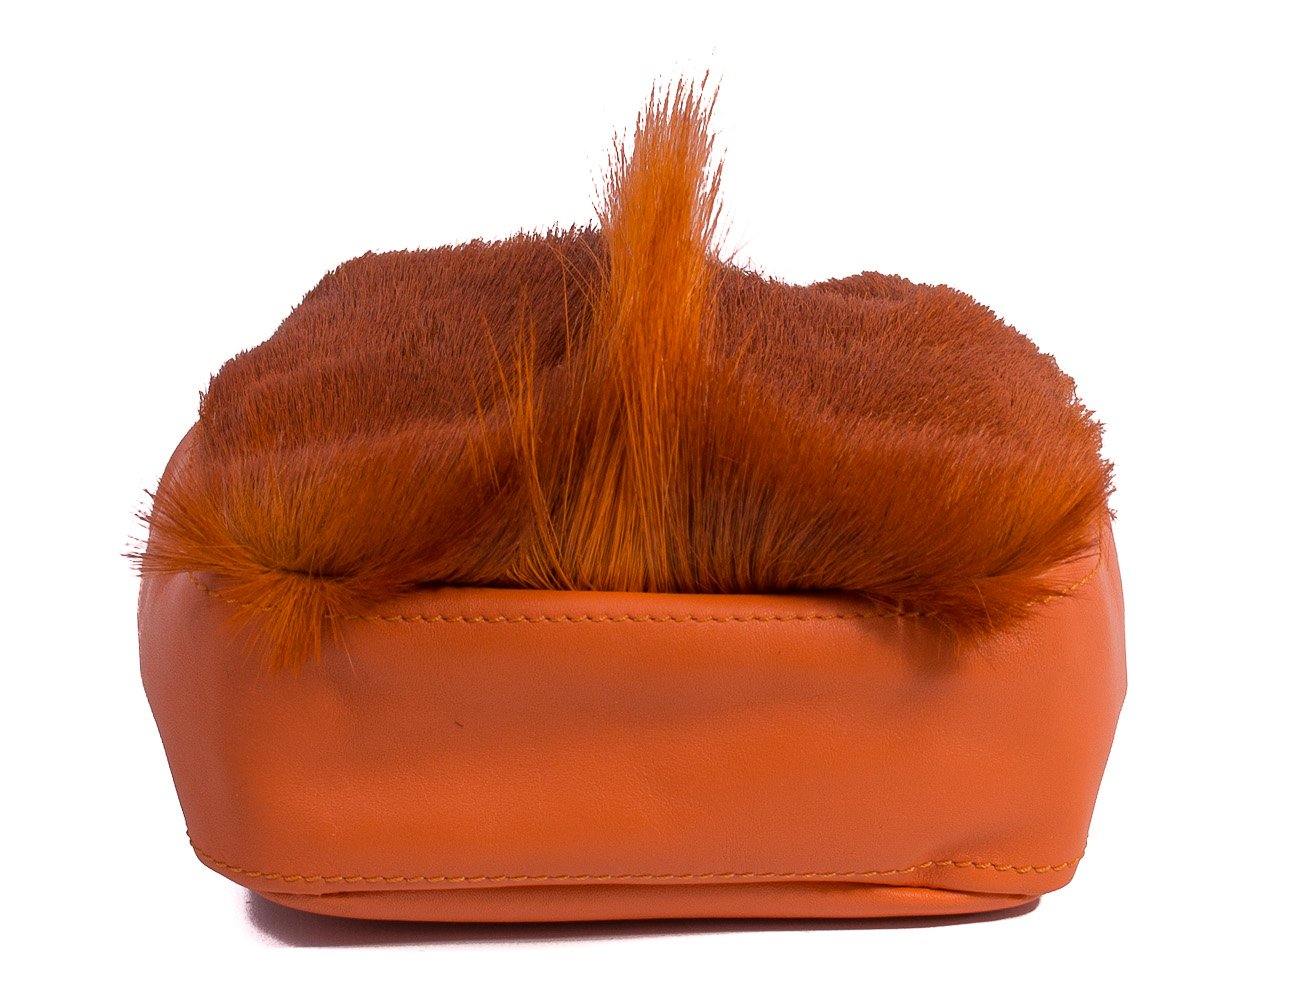 sherene melinda springbok hair-on-hide orange leather pouch bag Fan bottom